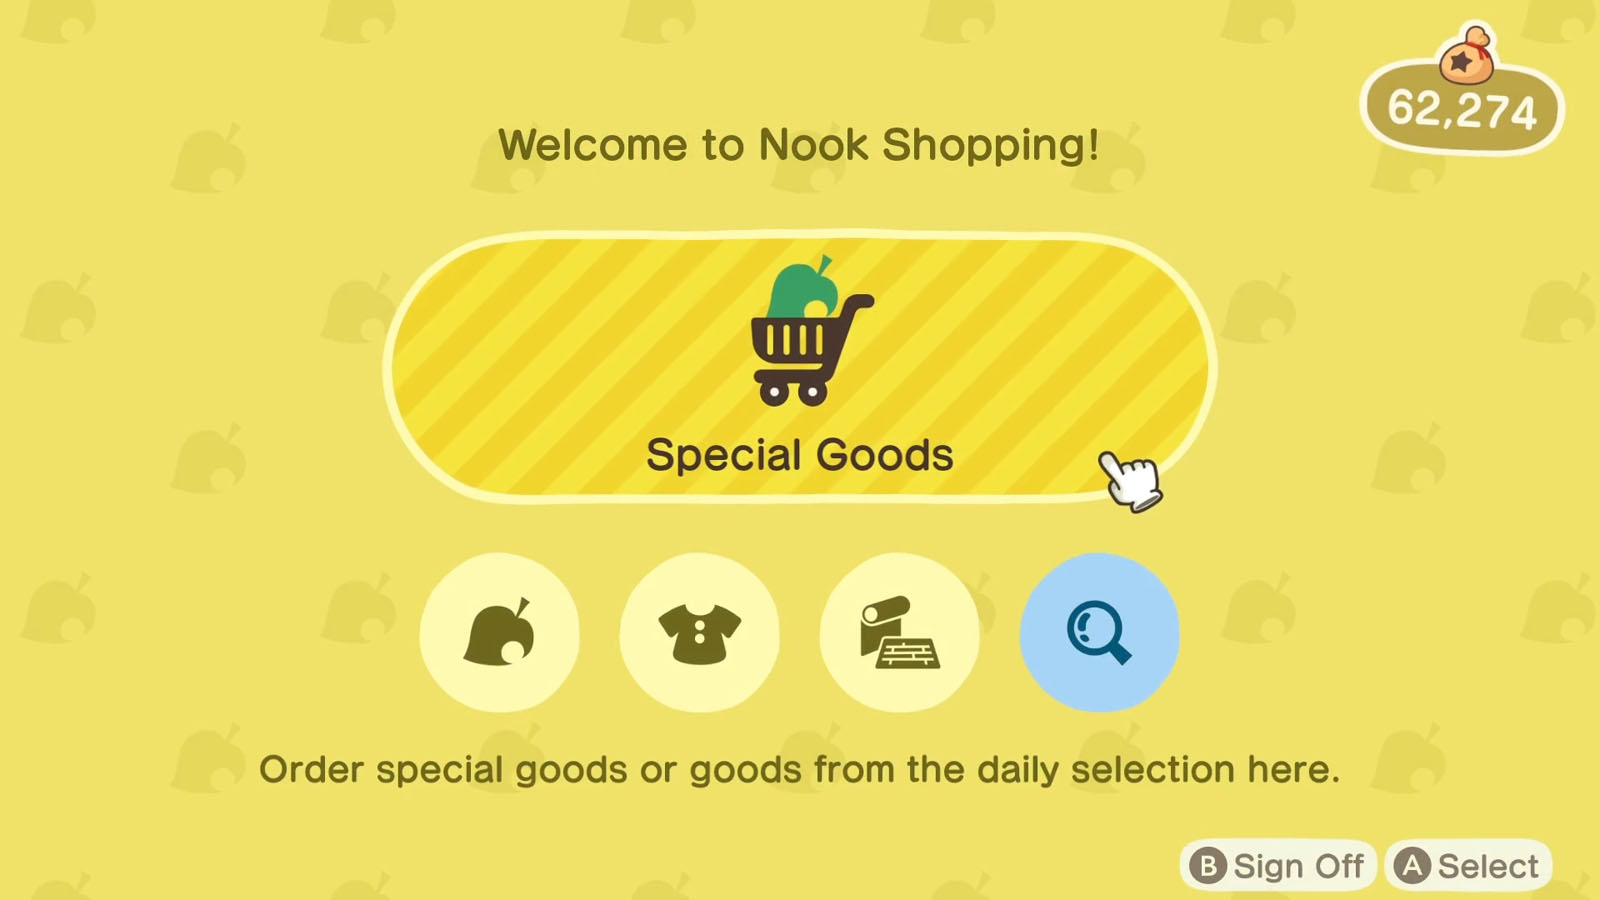 The yellow Nook Shopping home menu screen